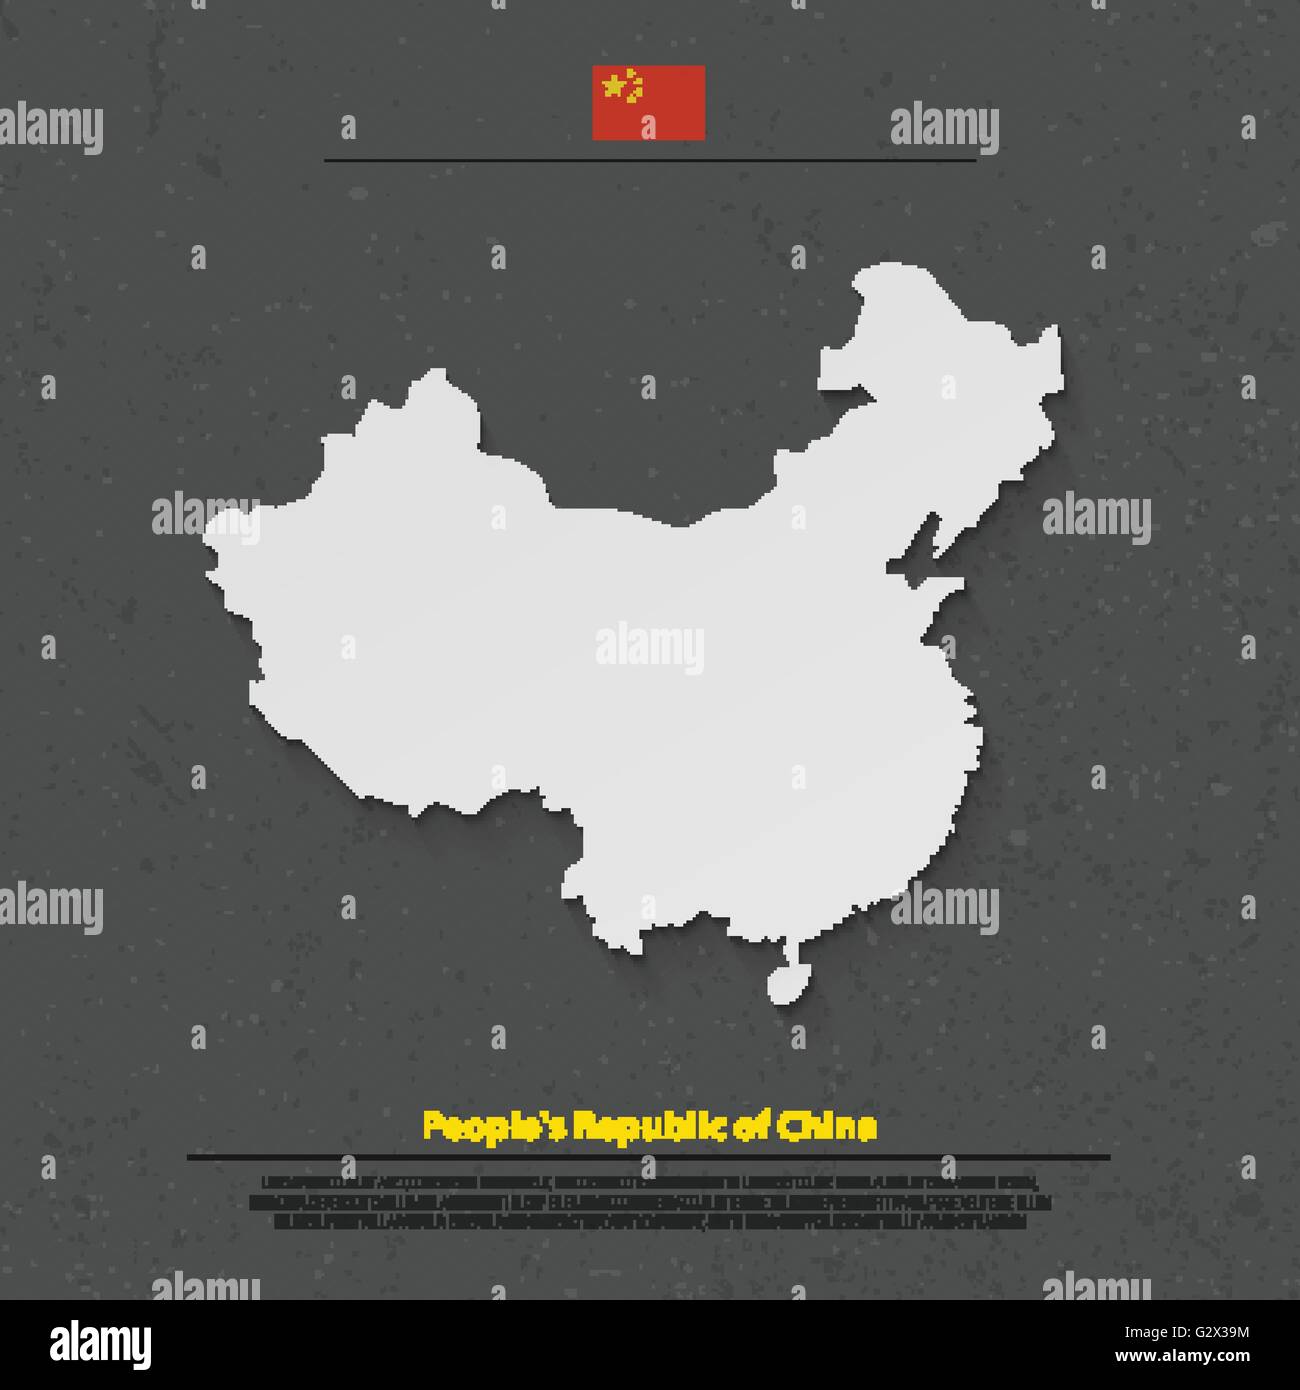 Volksrepublik China isoliert Karte und offizielle Flaggen-Icons. Vektor-chinesische politische Karte 3d Illustration. Asiatisches Land geo Stock Vektor